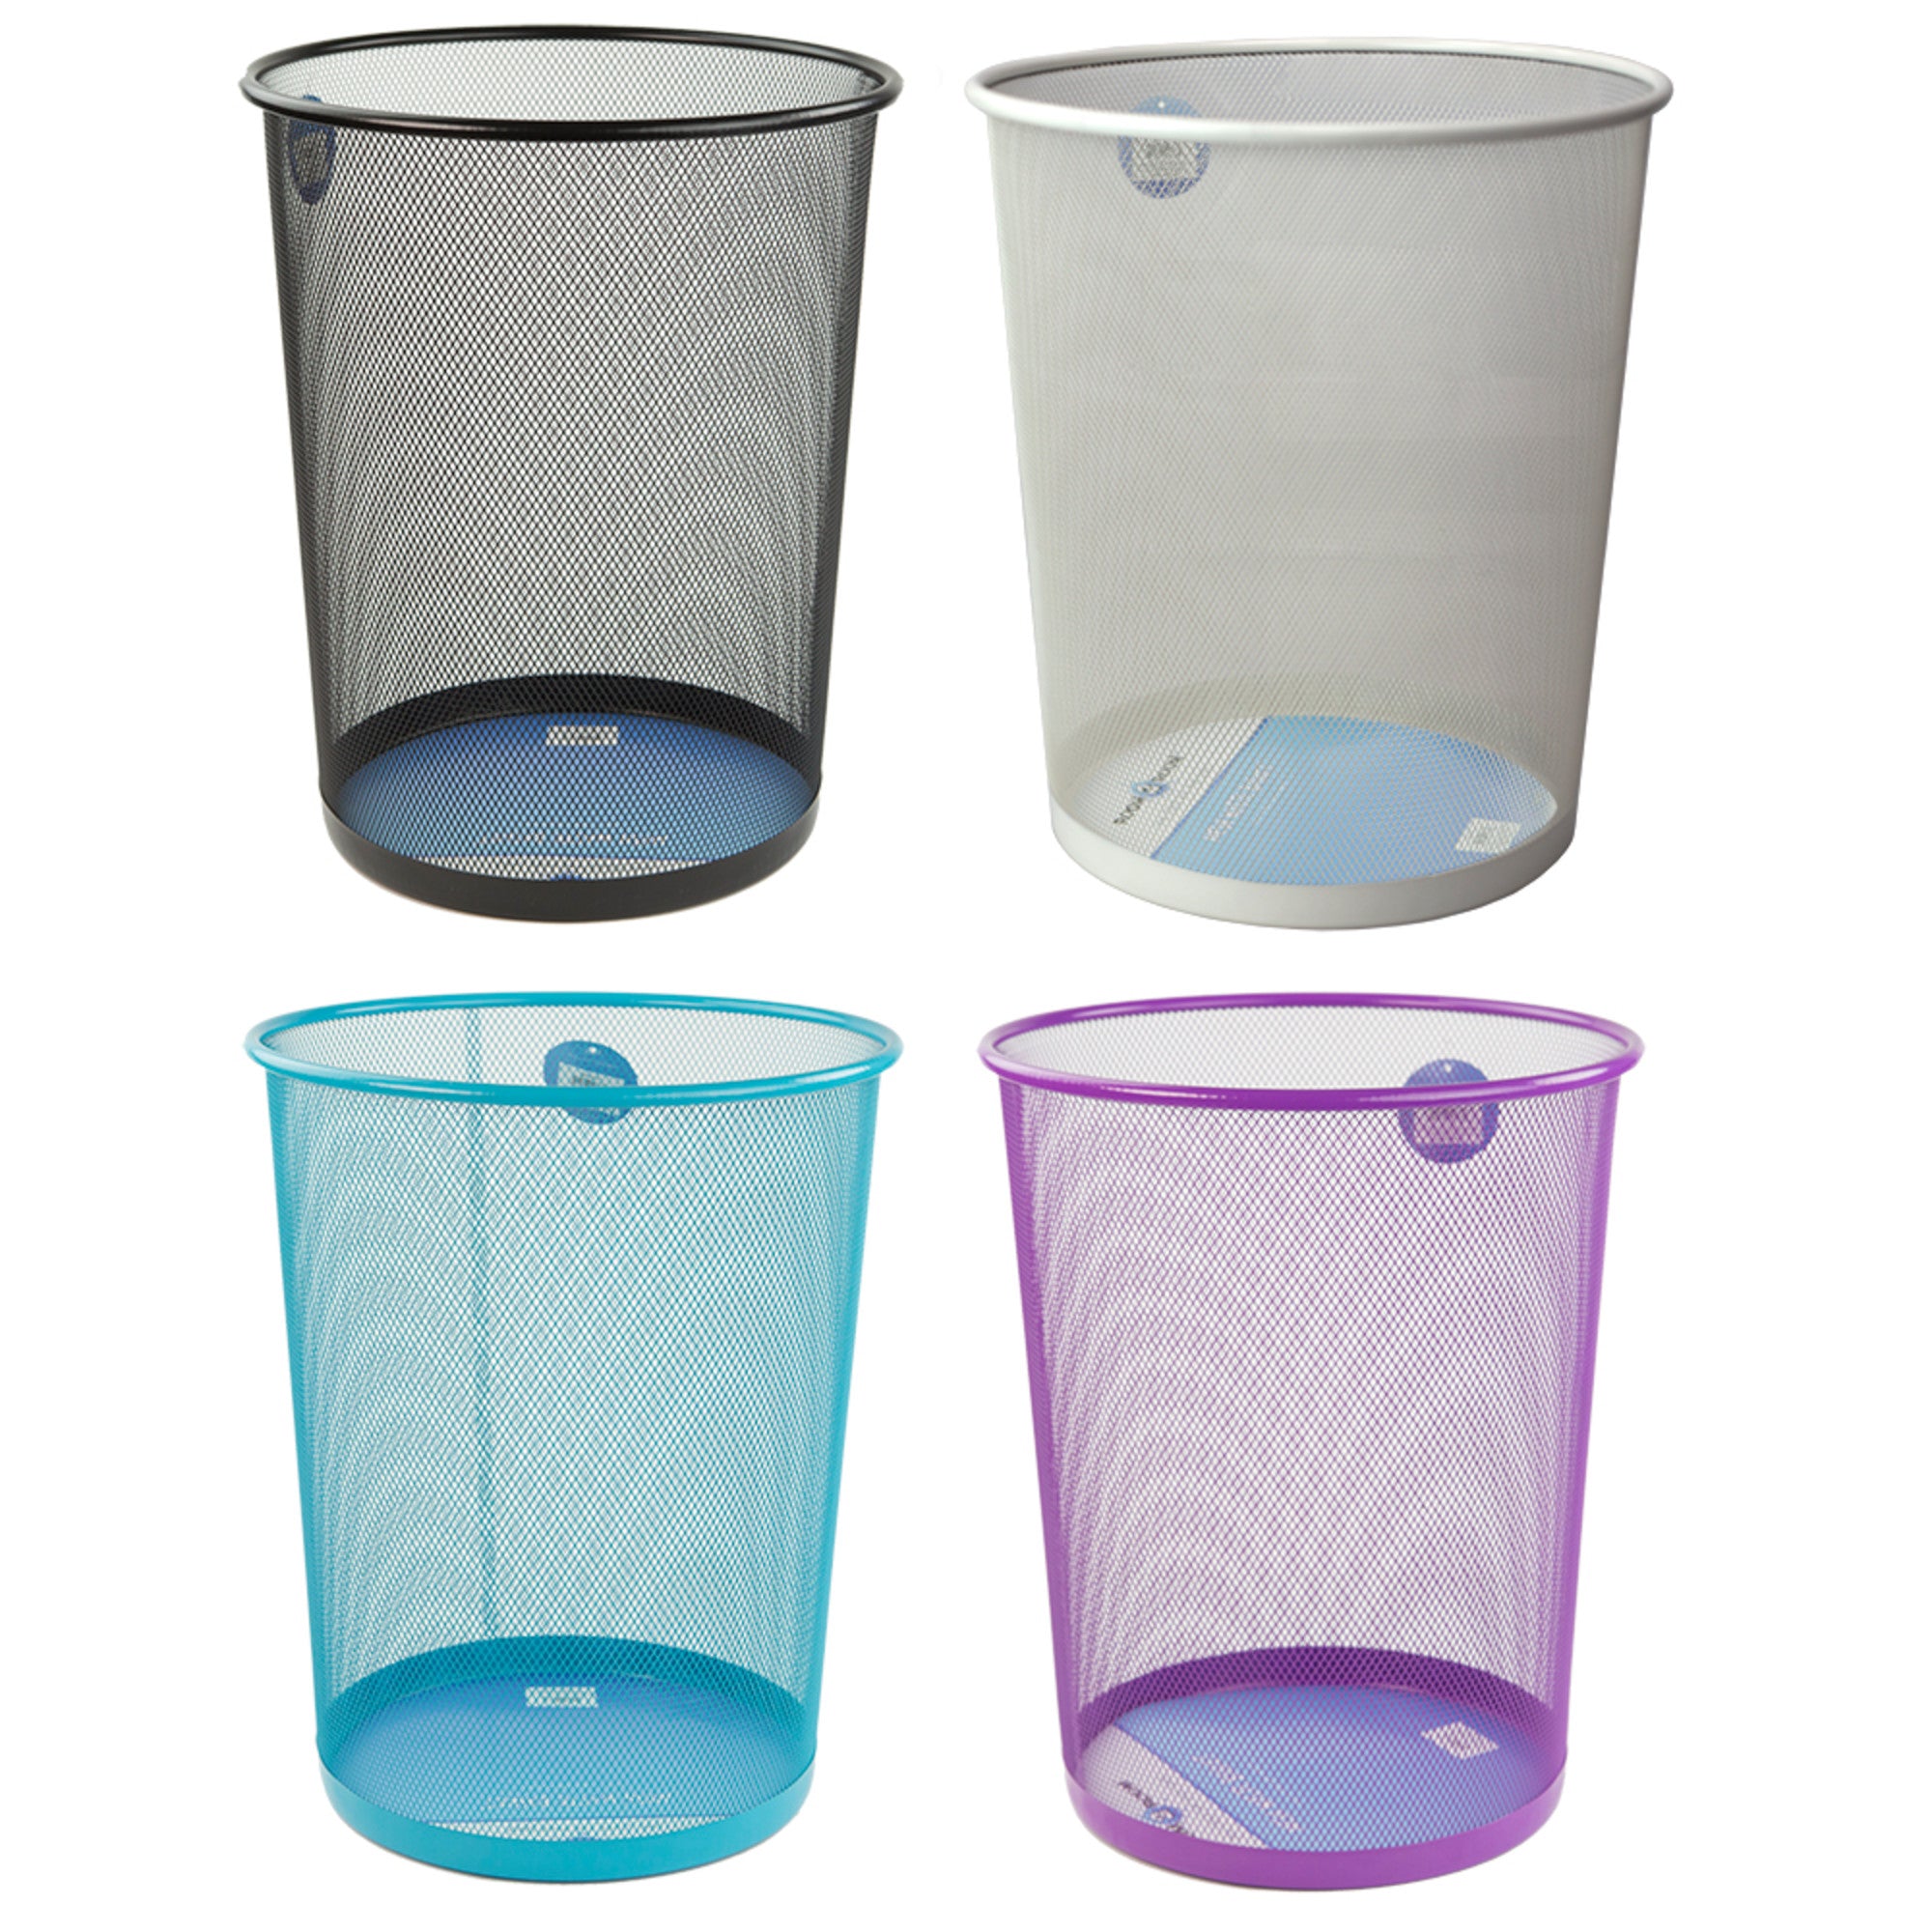 Home Basics Mesh Steel Waste Basket - Assorted Colors